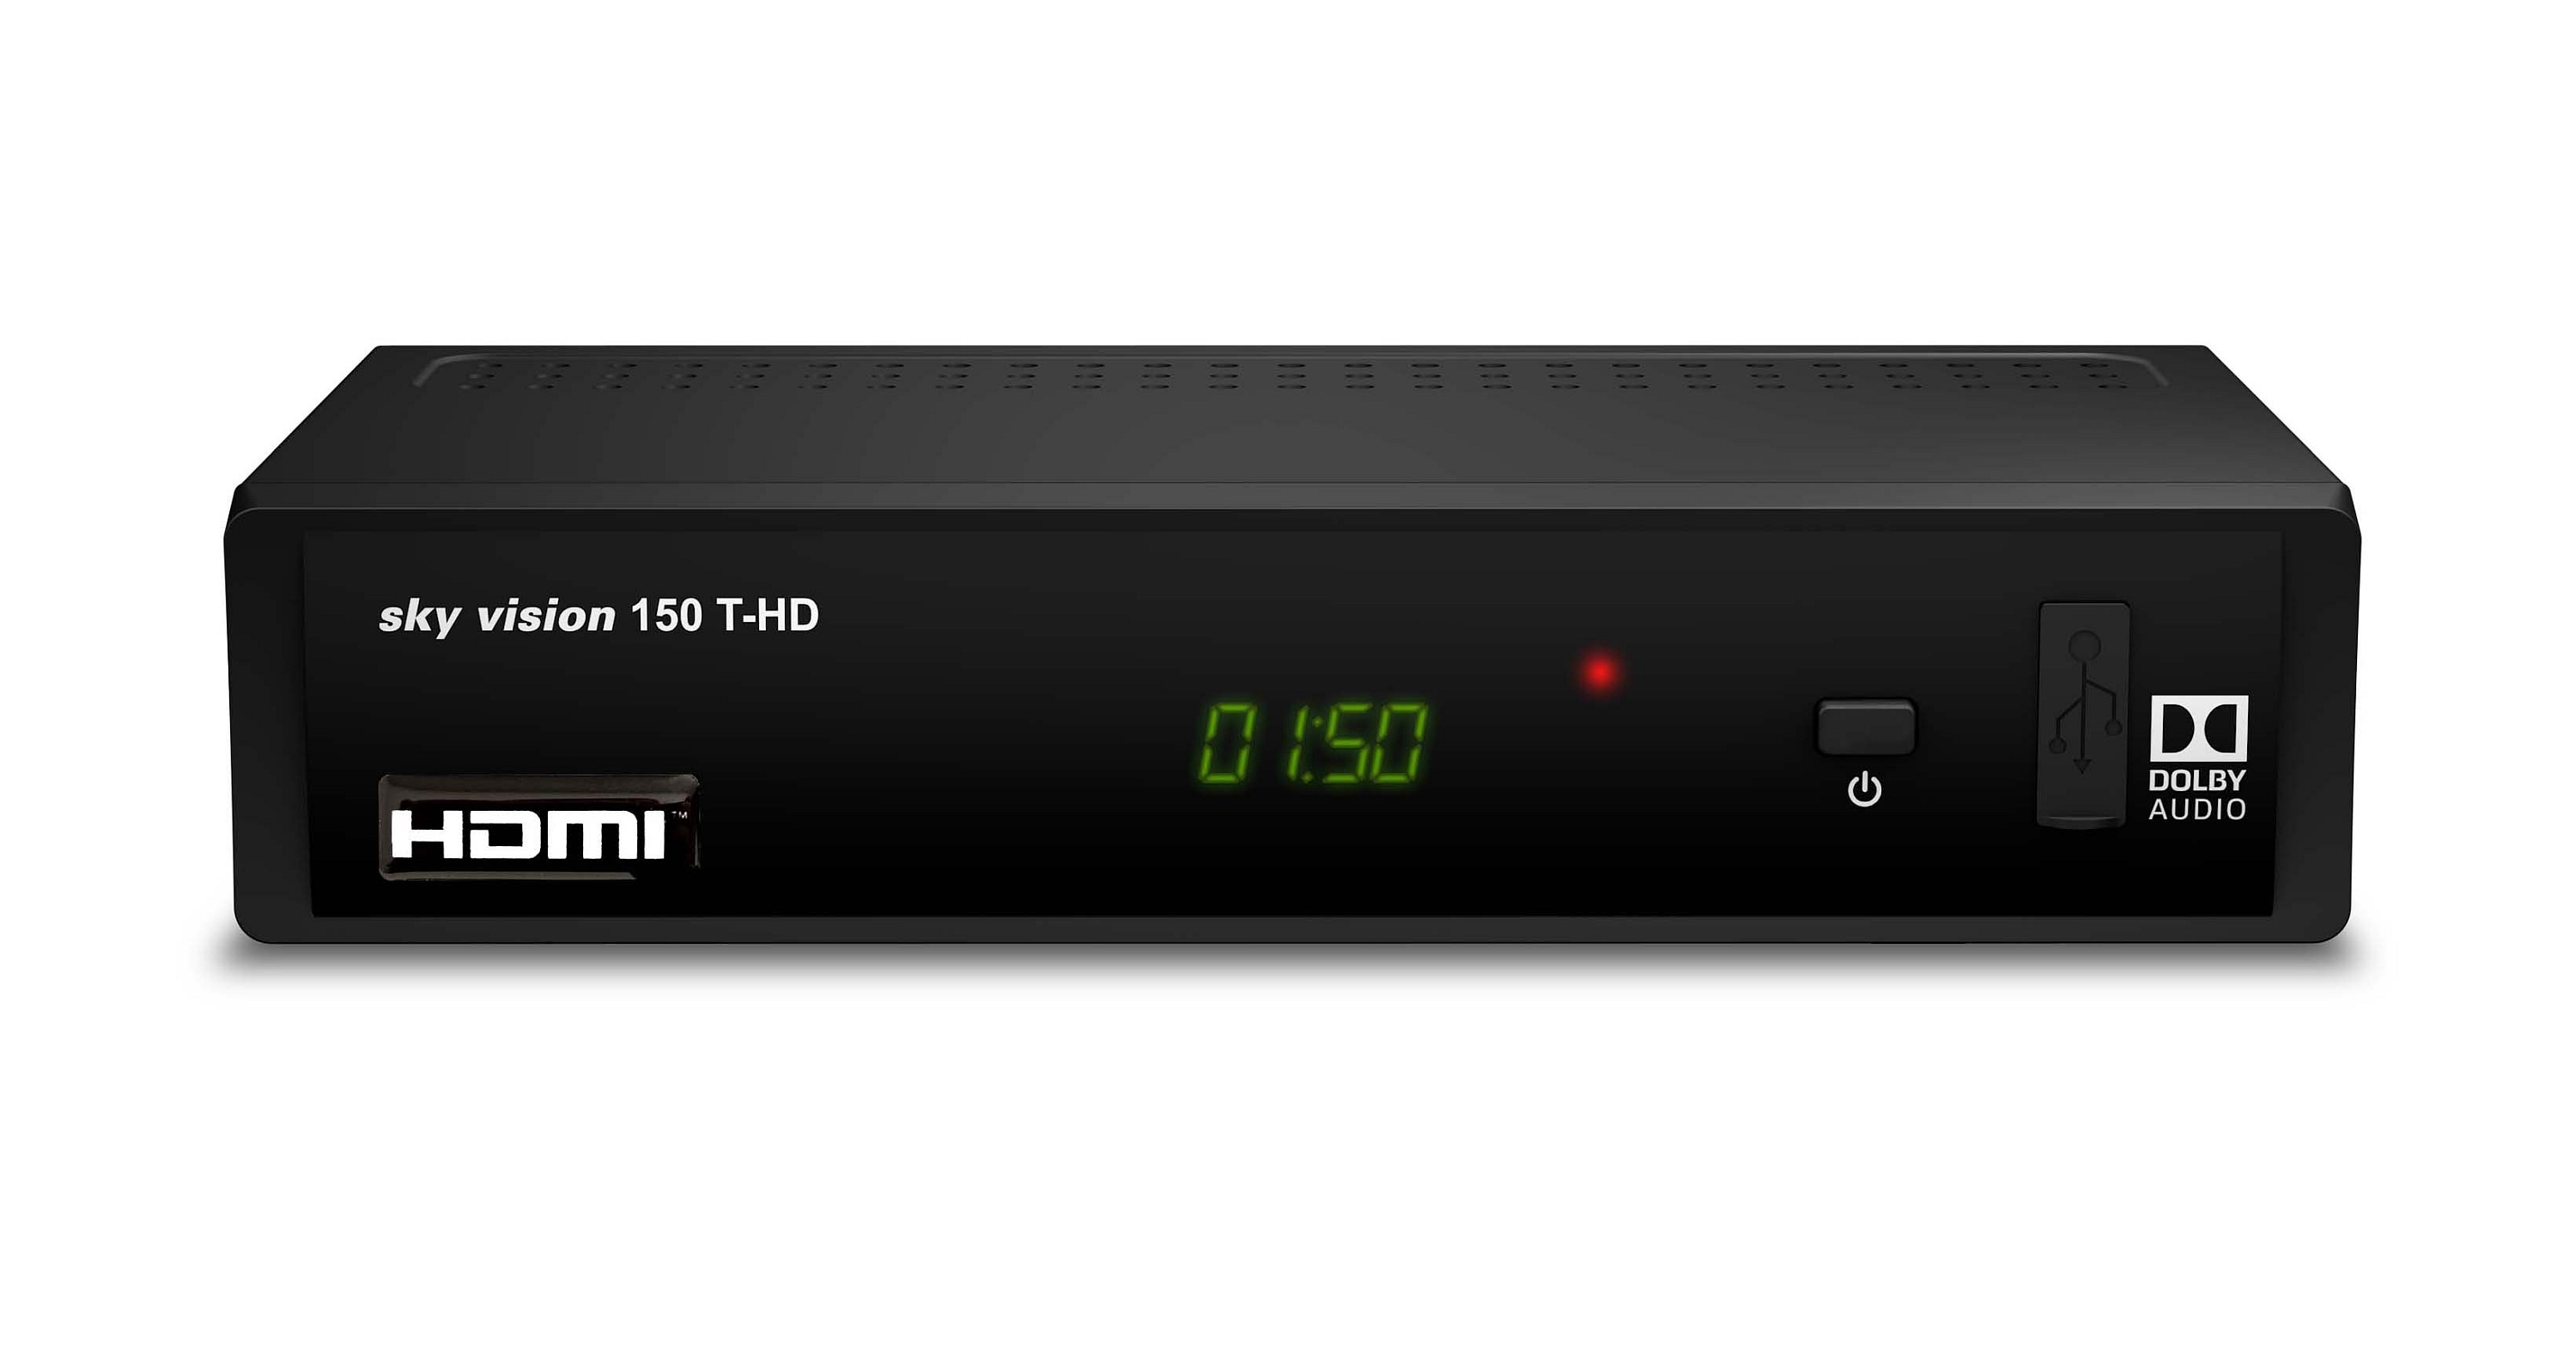 SKY schwarz) R9606 DVB-T2 (H.265), VISION (DVB-T, DVB-T-Receiver